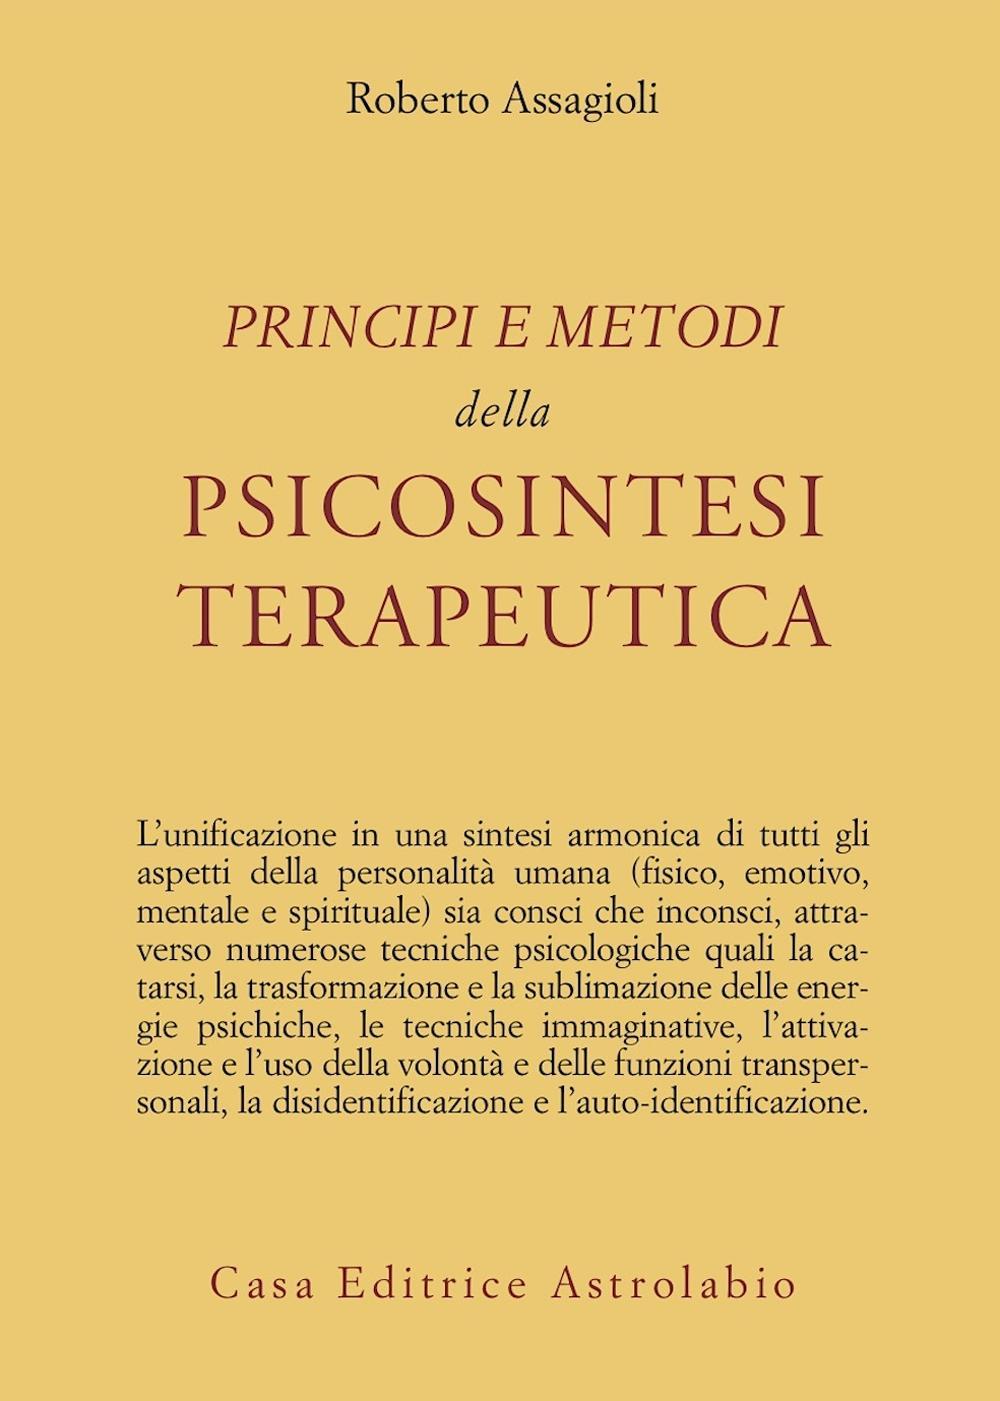 Книга Principi e metodi della psicosintesi terapeutica Roberto Assagioli